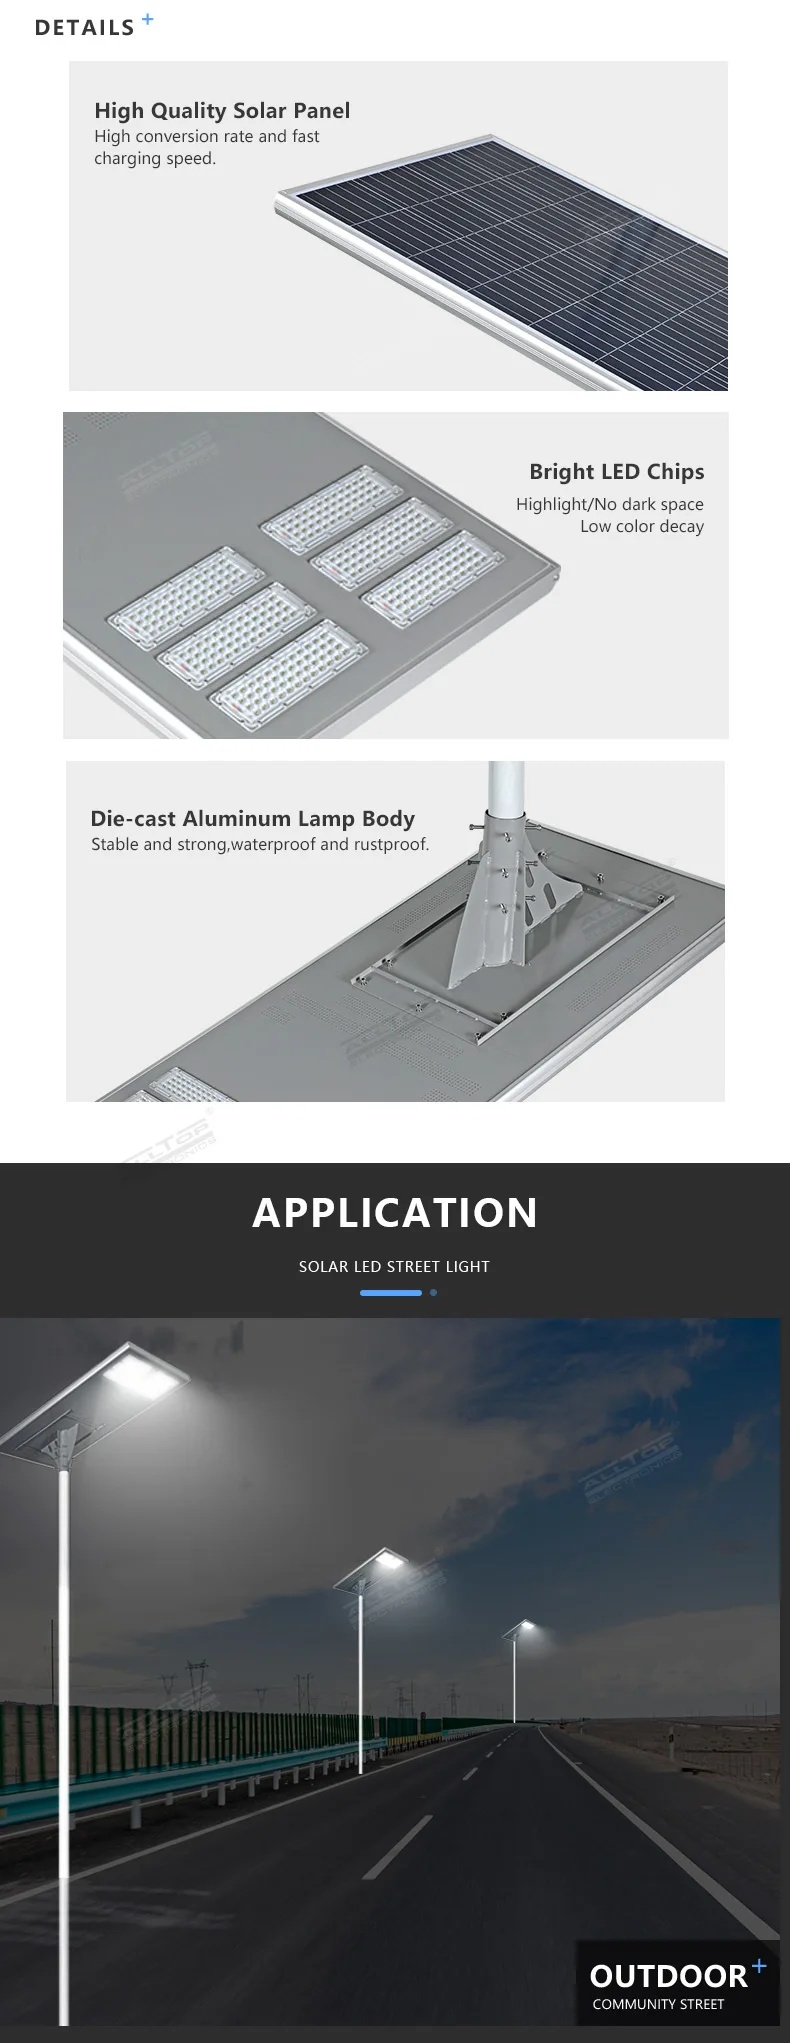 ALLTOP Super brightness outdoor aluminium all in one square ip65 waterproof 200watt led solar streetlight